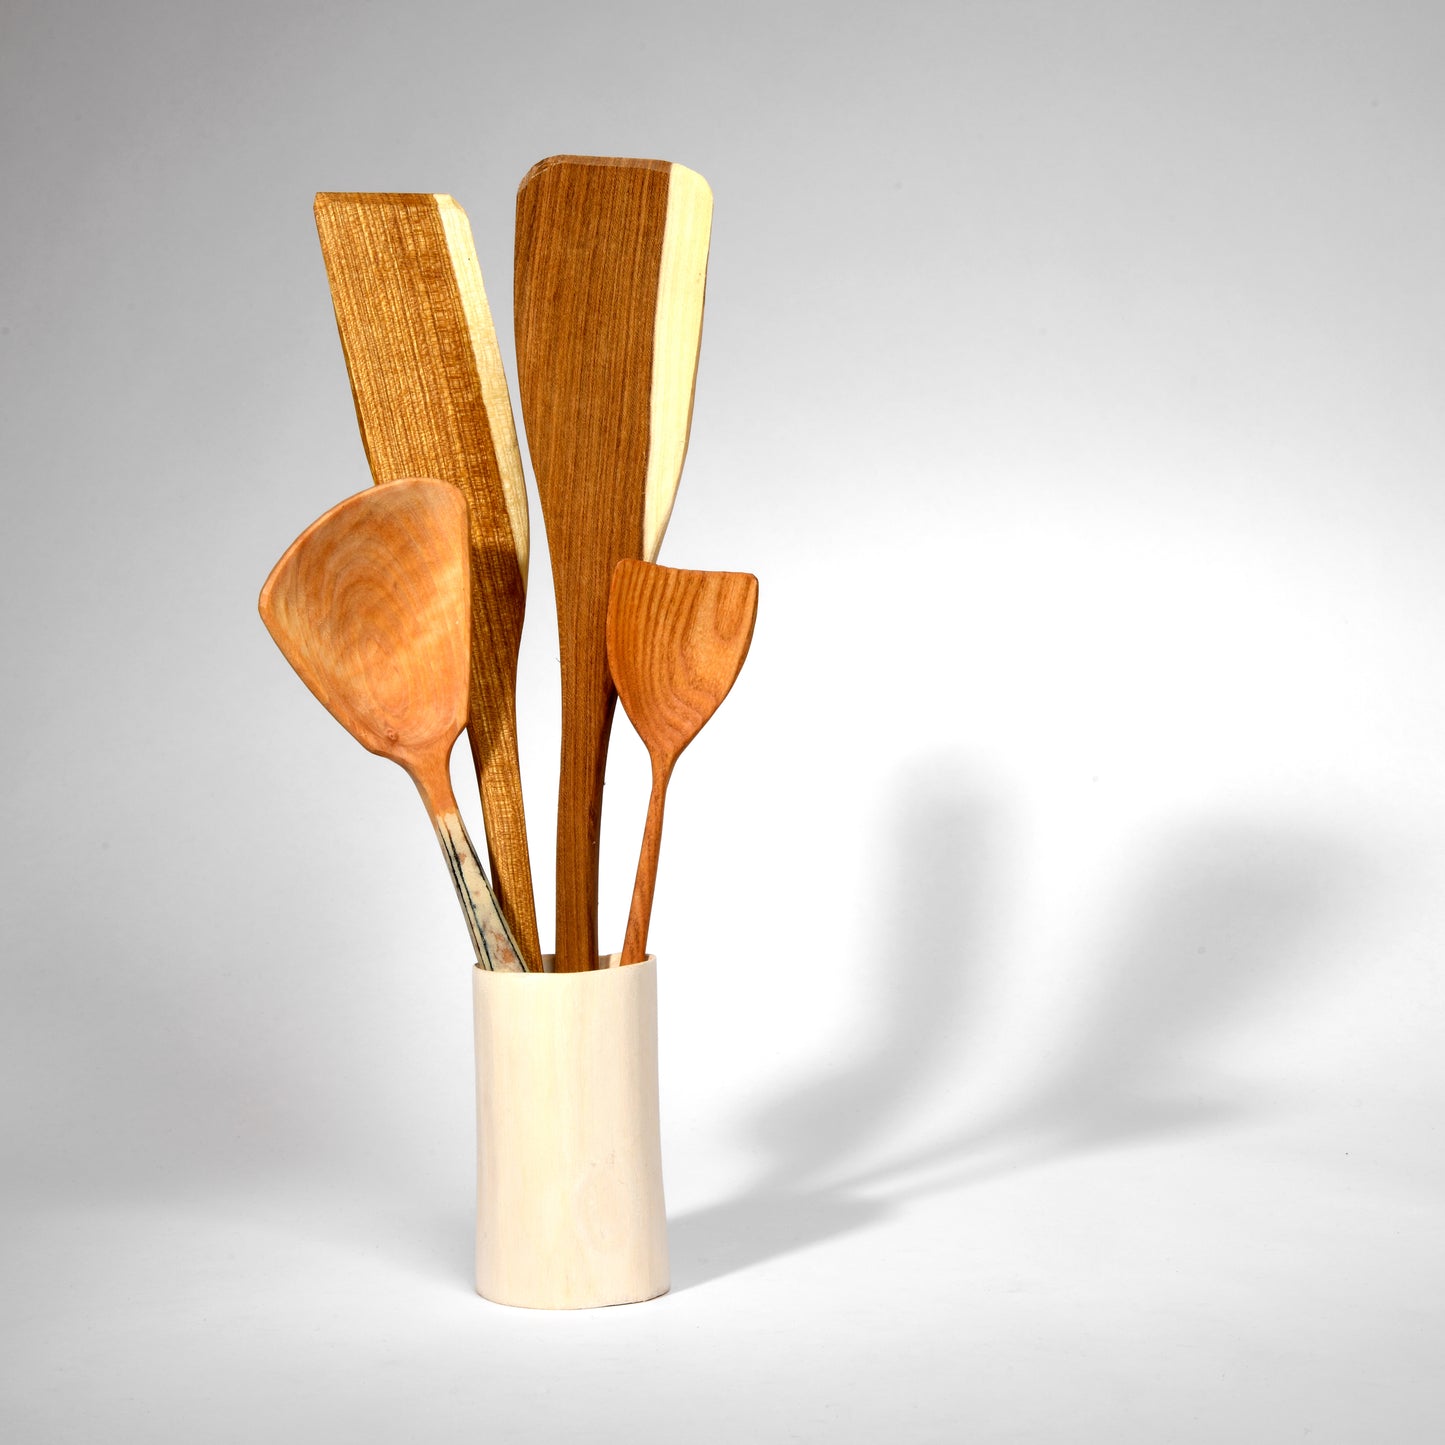 Wooden stripey spatula